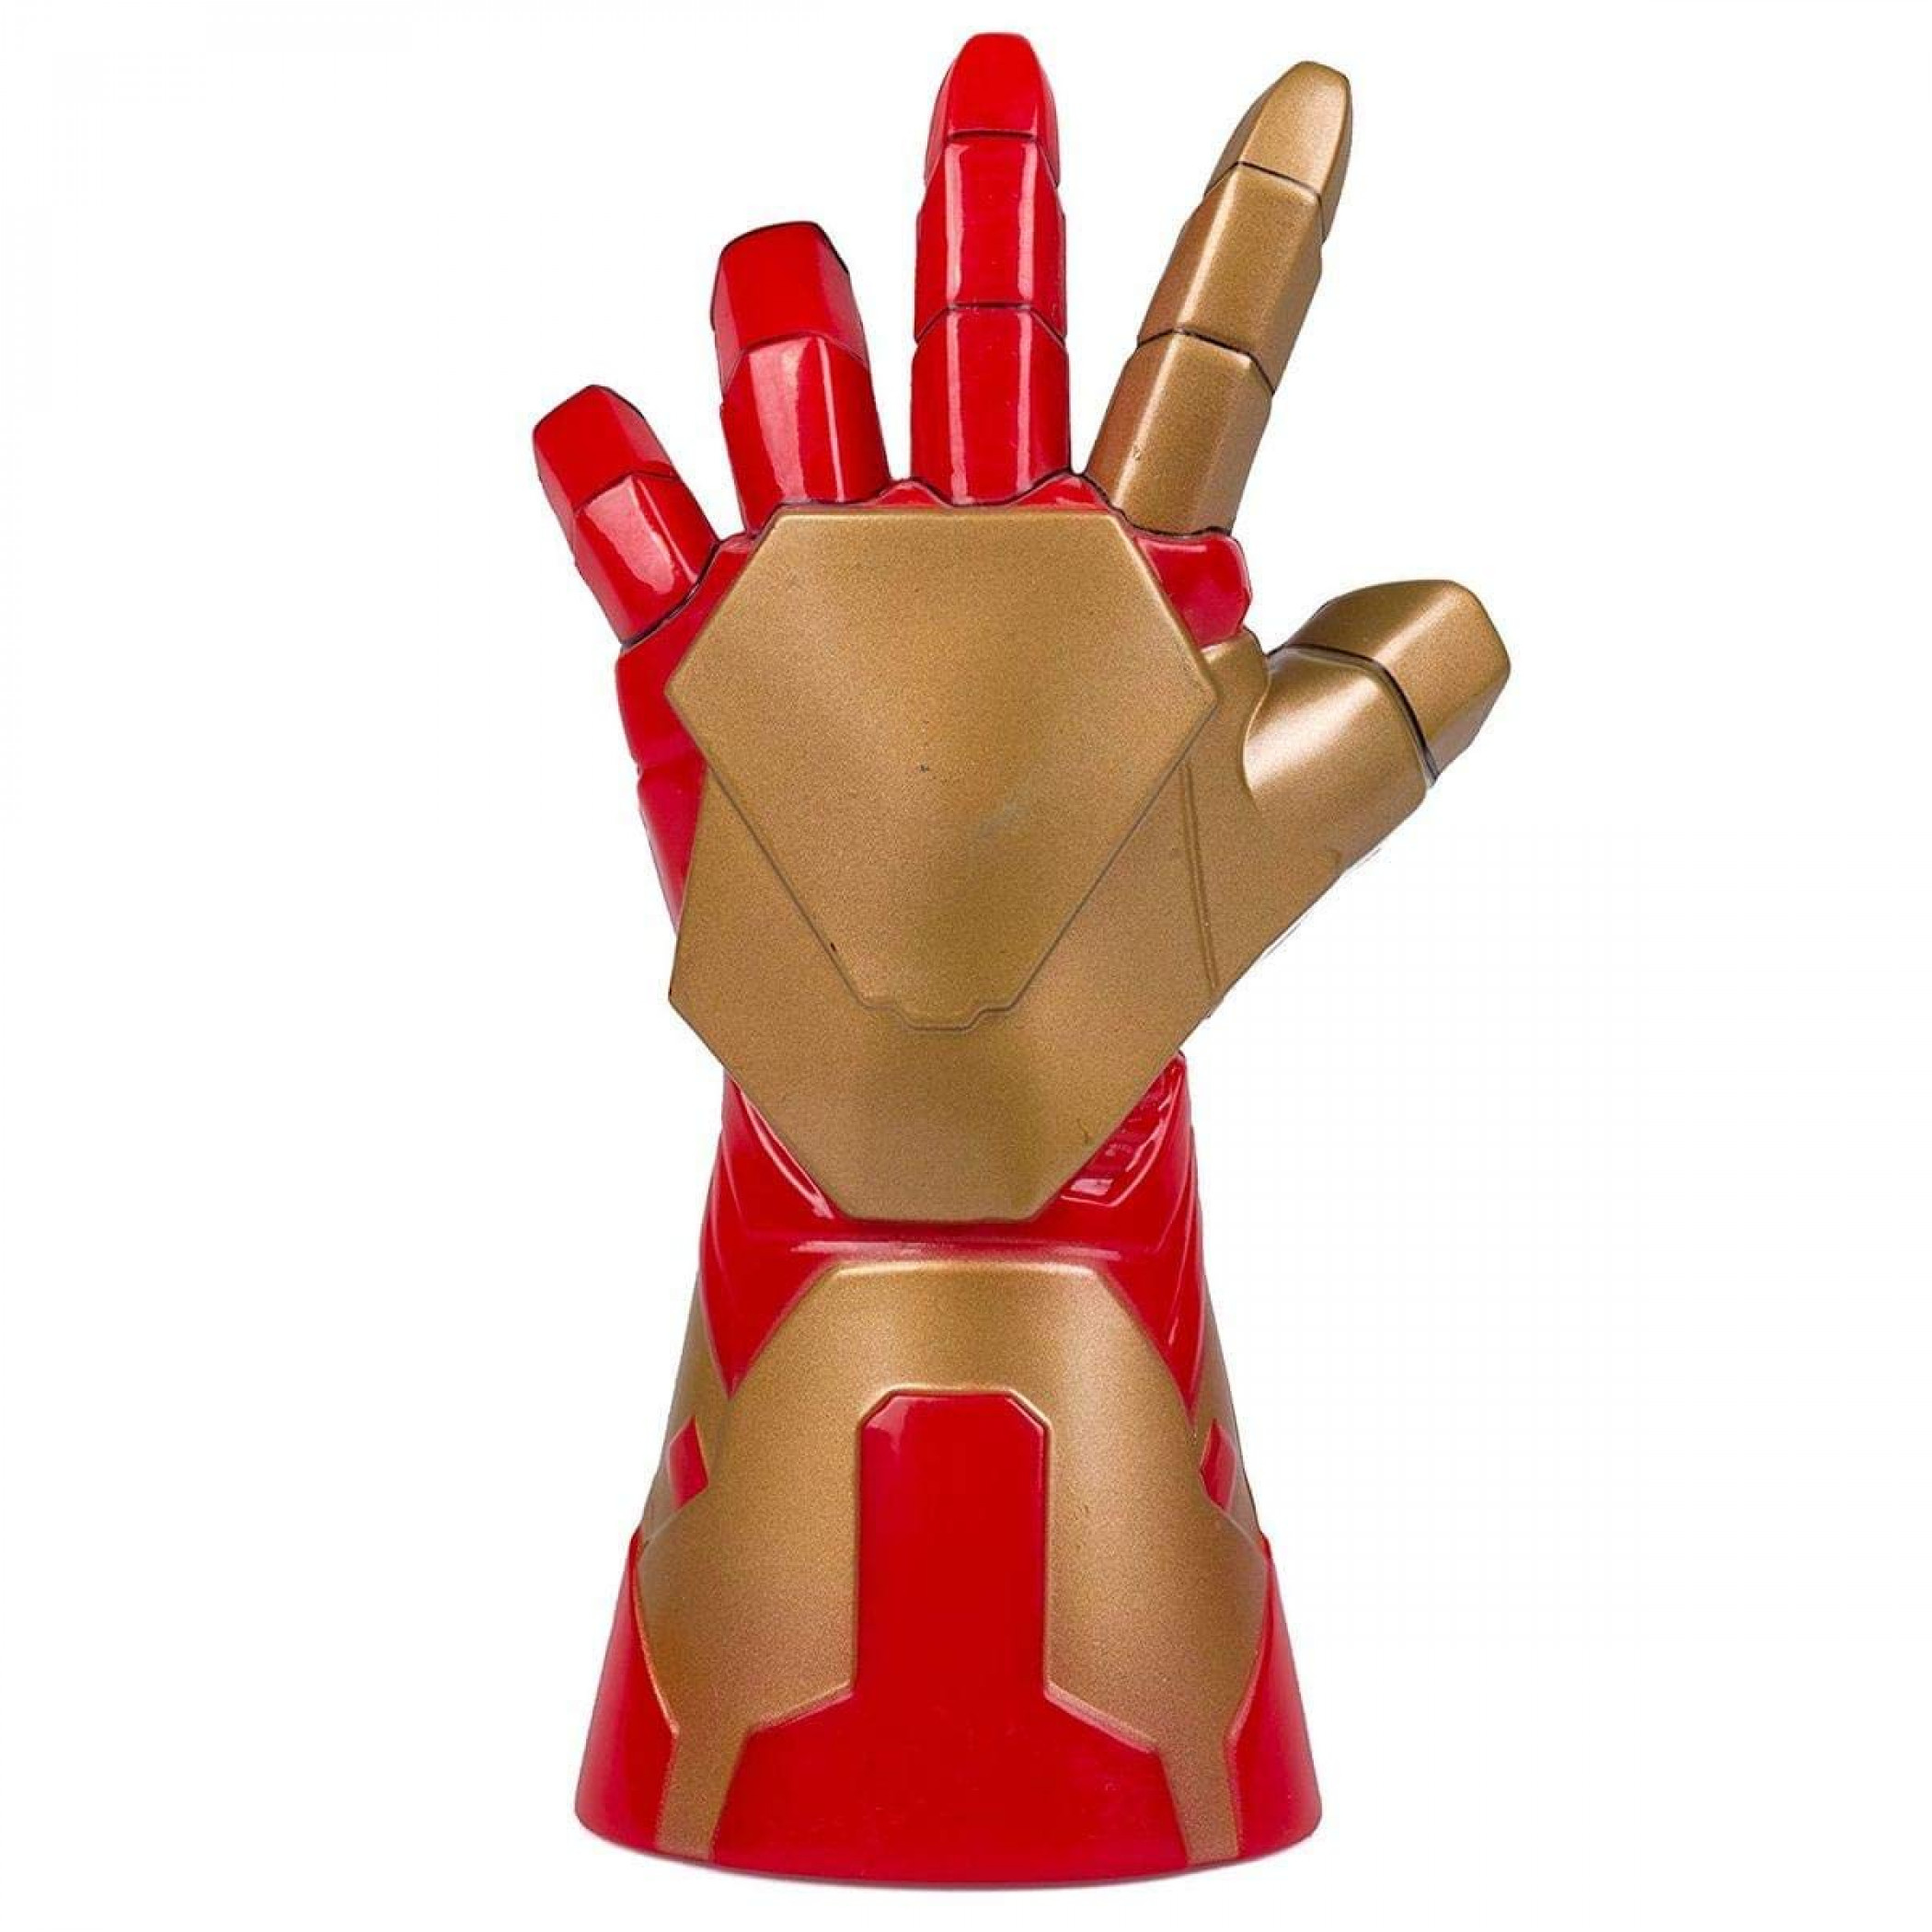 Marvel's Iron Man Fist Bottle Opener